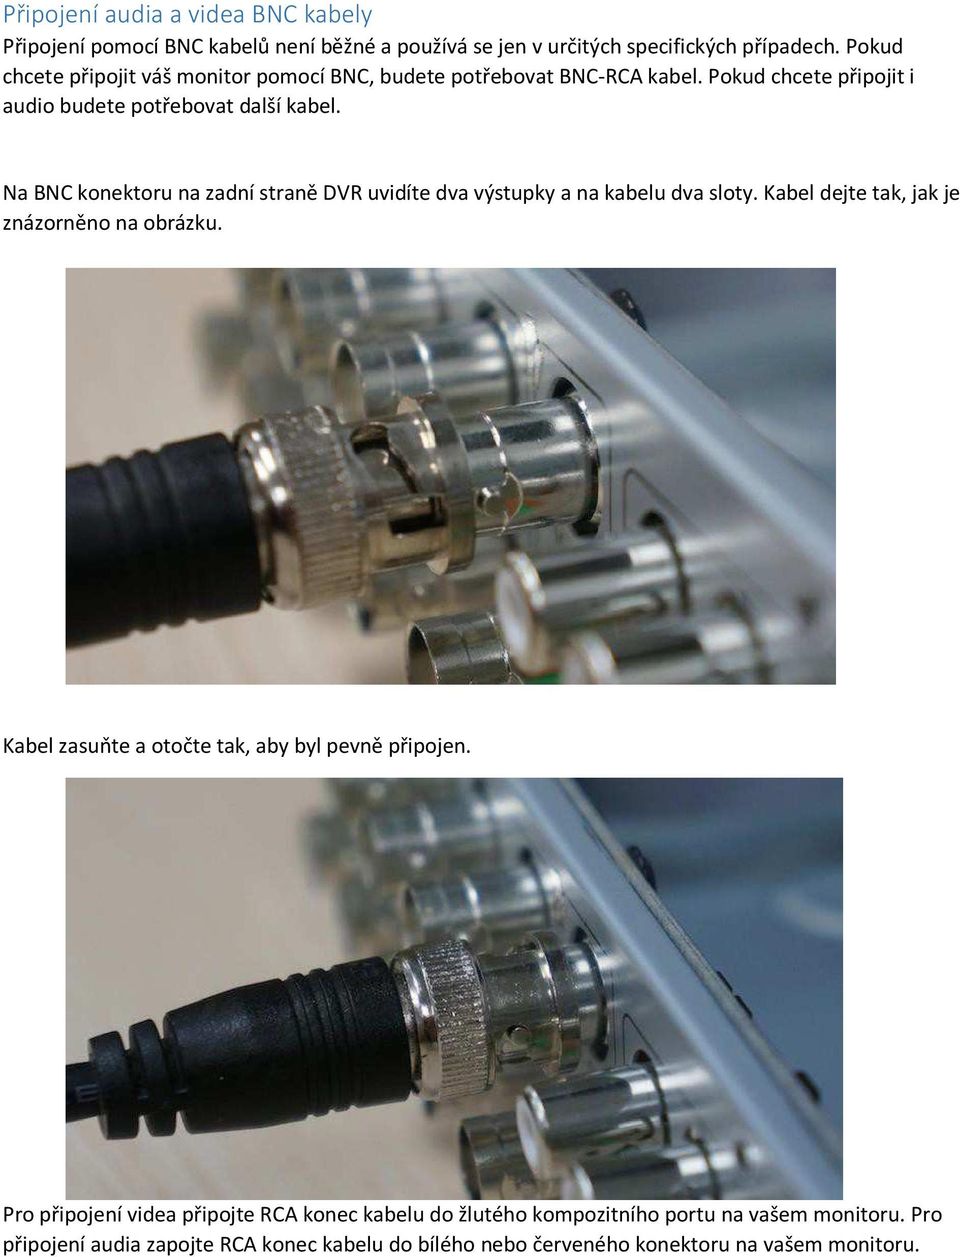 Na BNC konektoru na zadní straně DVR uvidíte dva výstupky a na kabelu dva sloty. Kabel dejte tak, jak je znázorněno na obrázku.